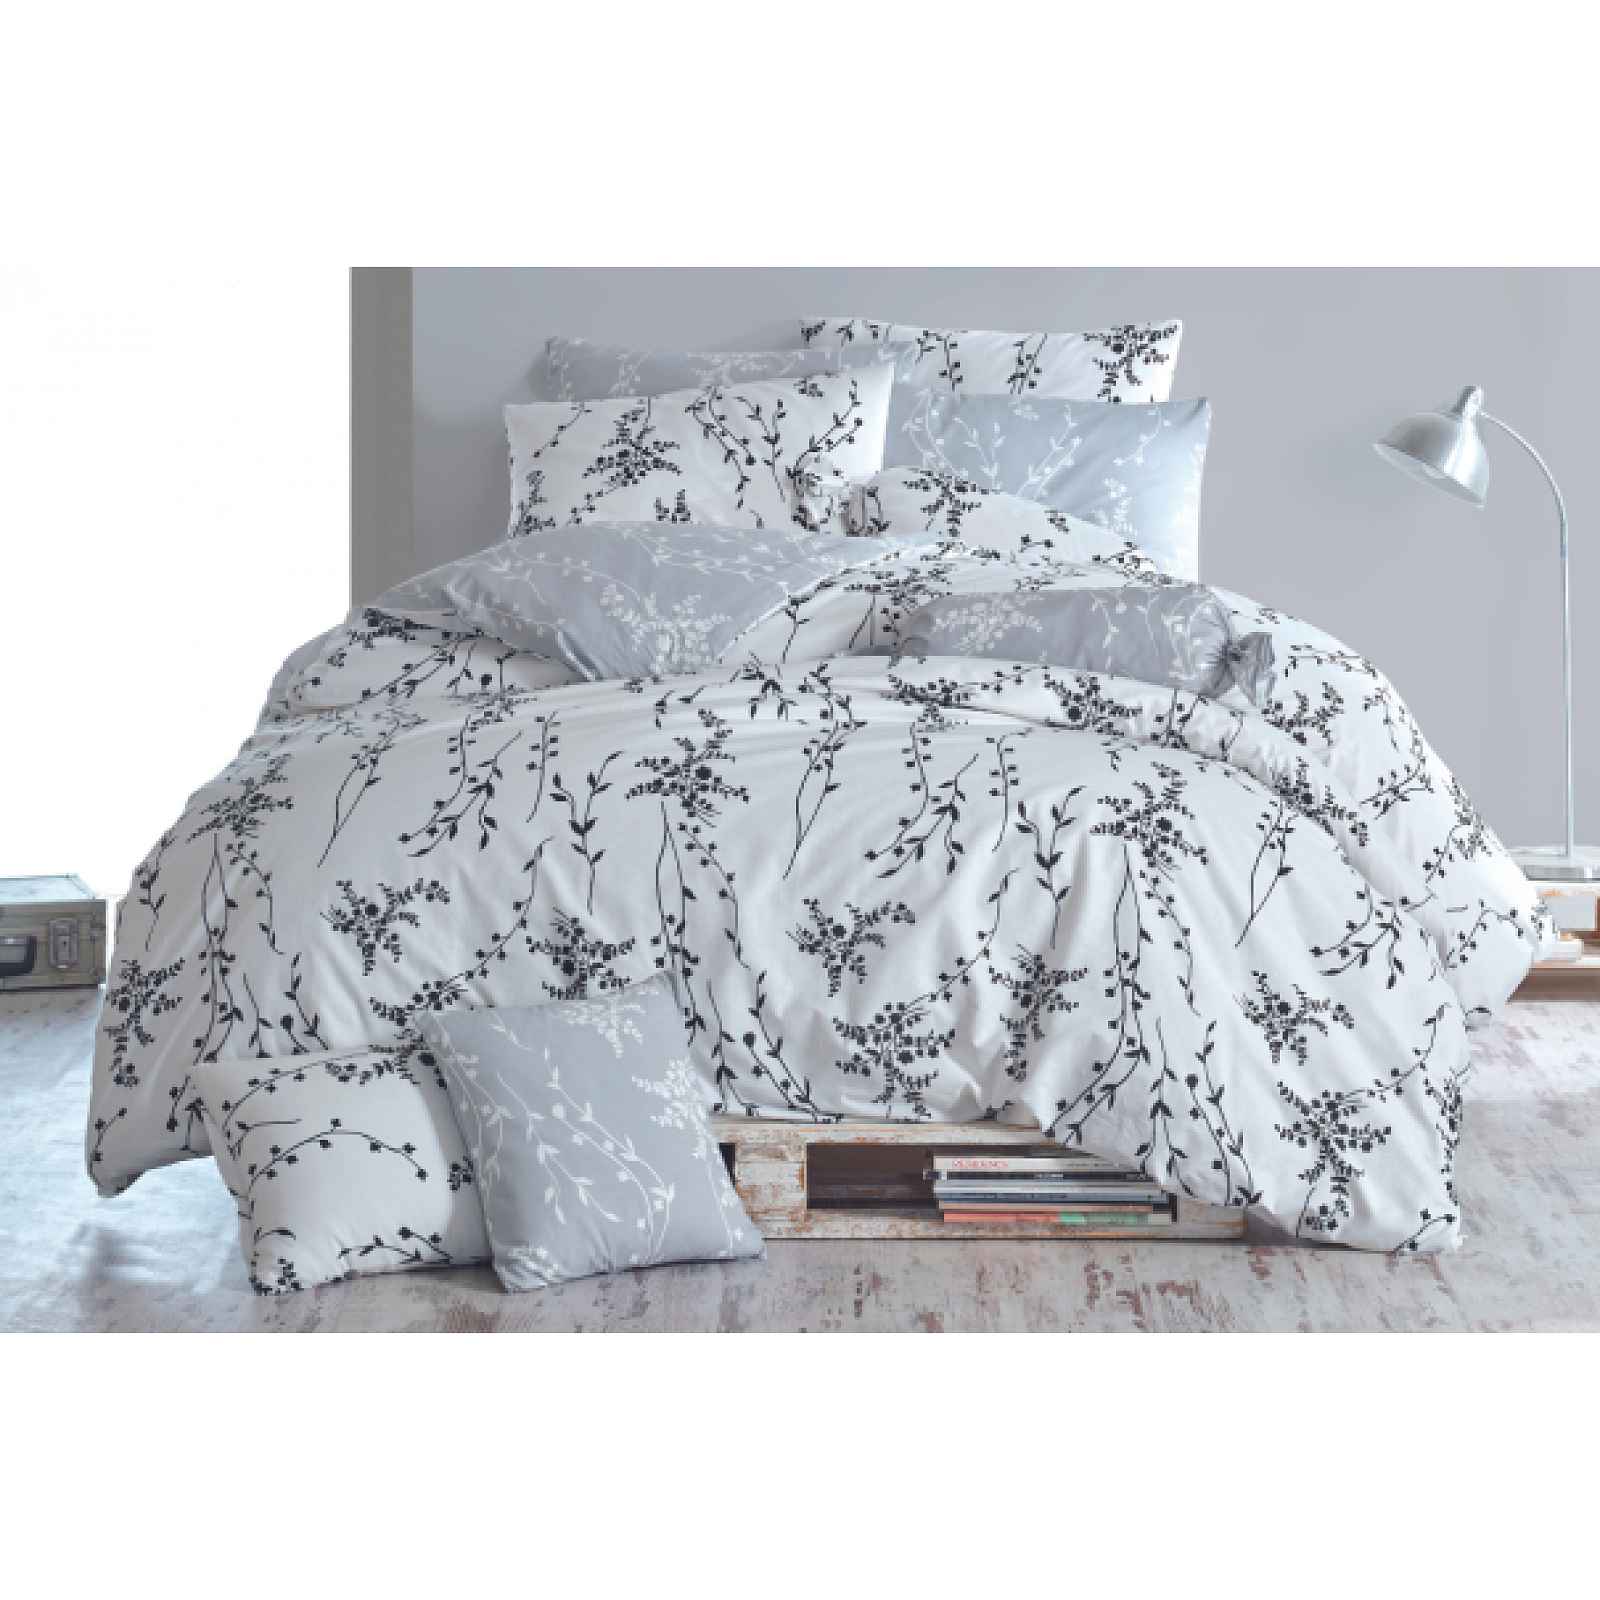 Klinmam Home Blumen V4 Grey povlečení z Renforcé bavlny, jemný květinový vzor, 140x200 cm + 70x90 cm